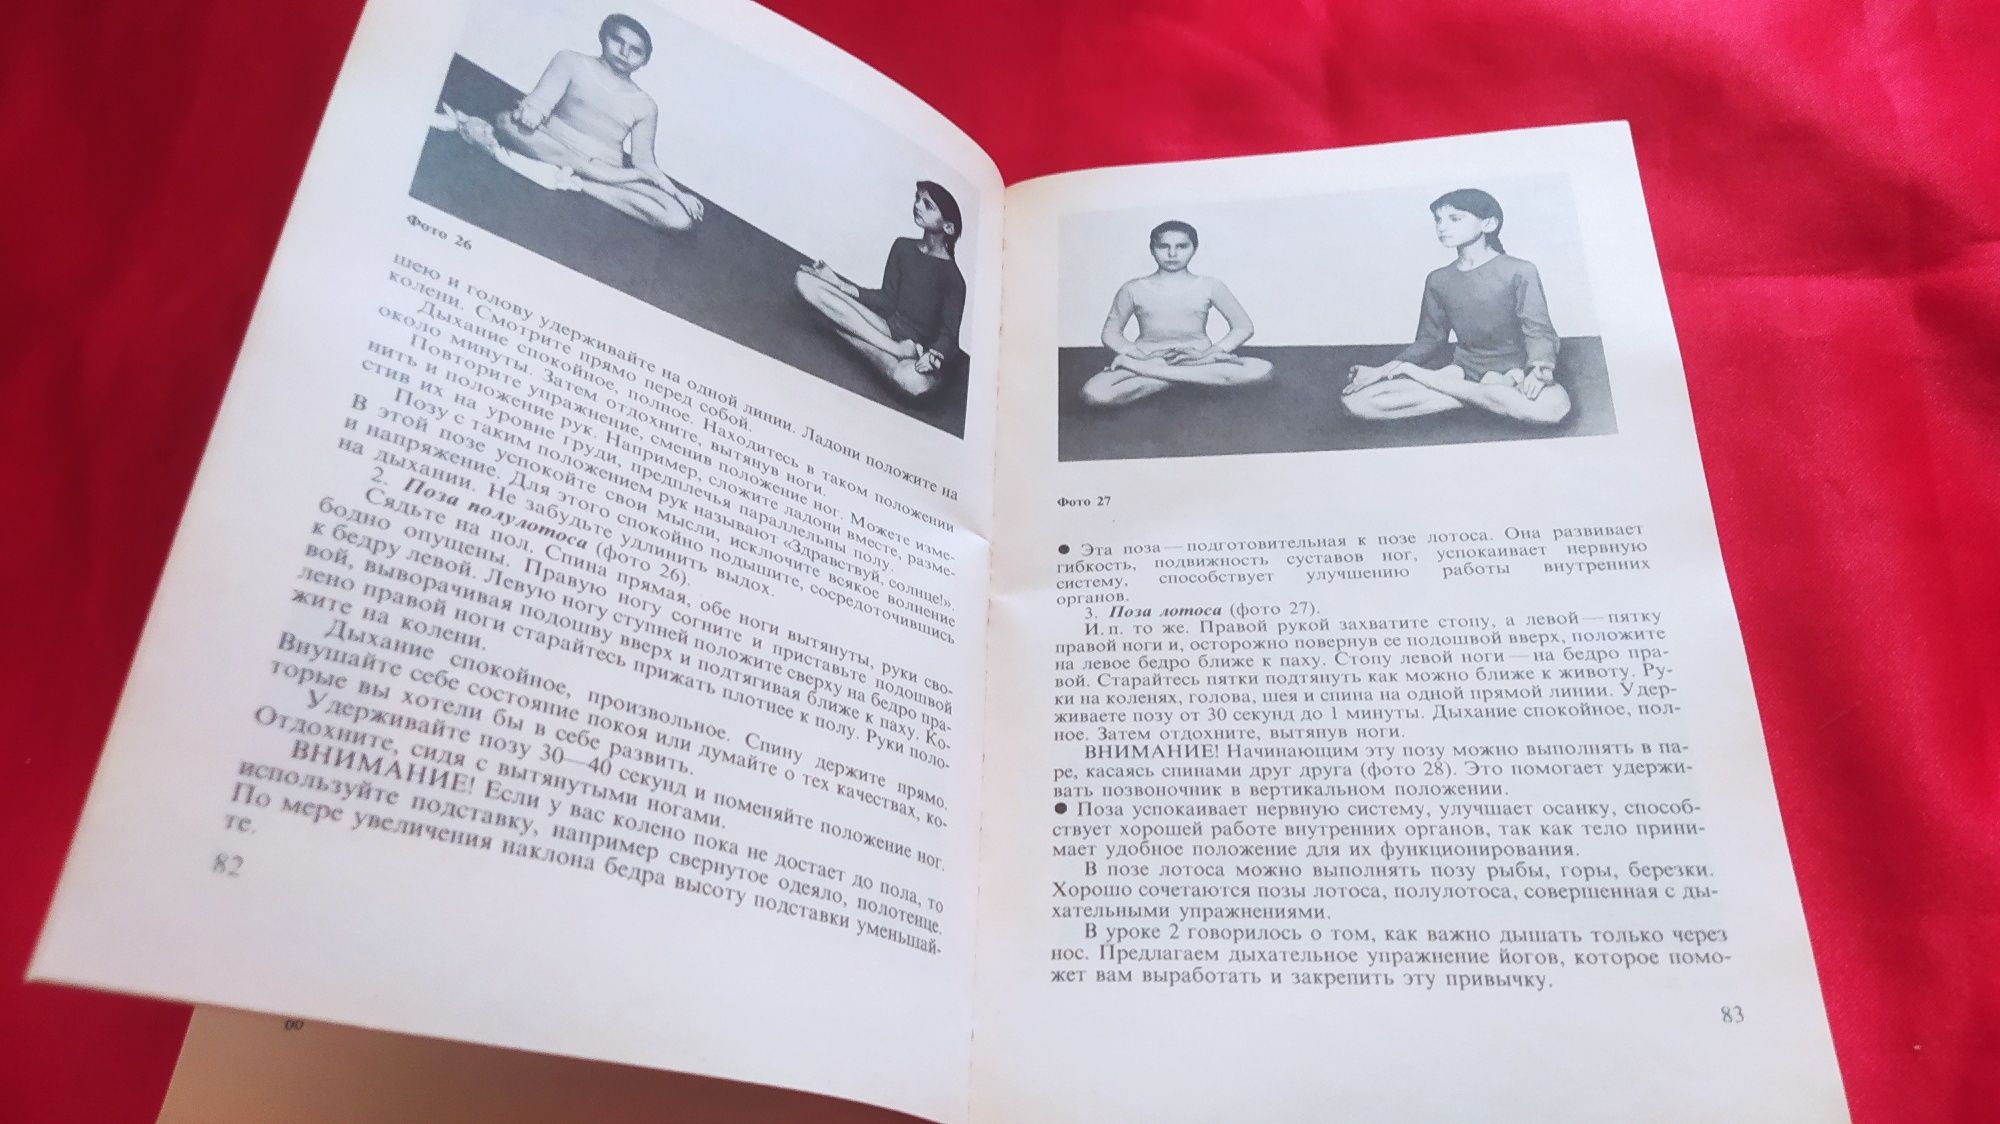 "Хатха-йоги для детей". Книга СССР 1993 г.